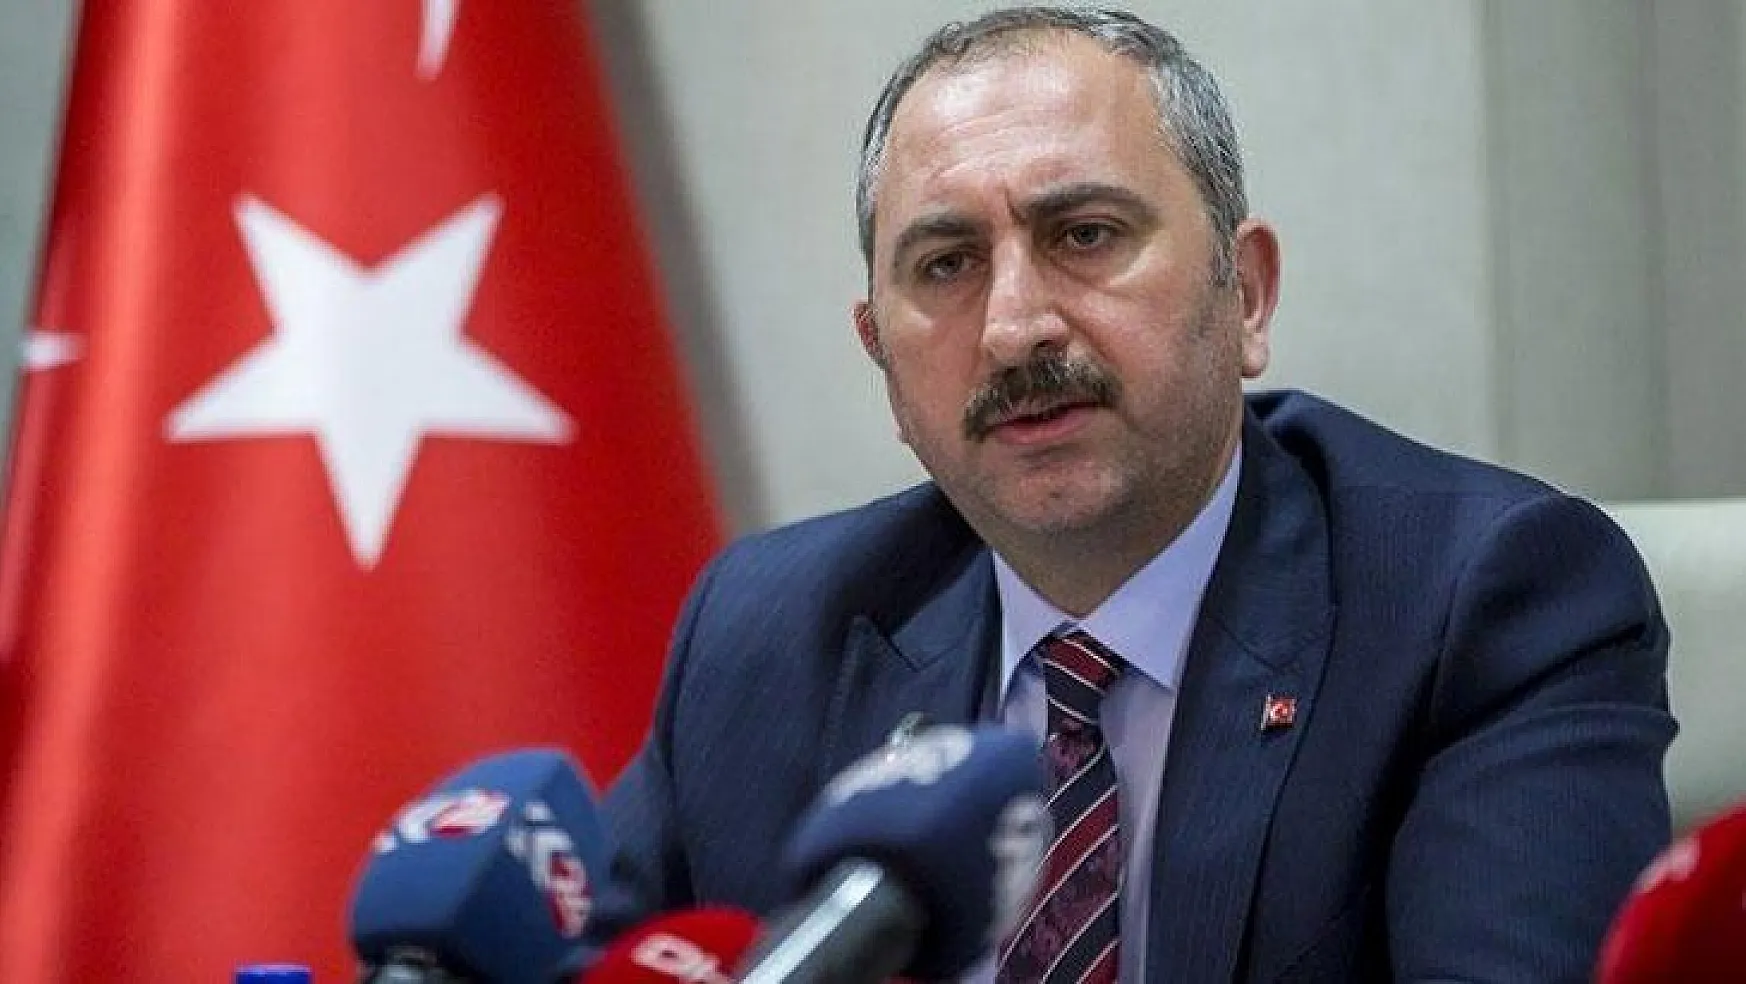 Bakan Gül 'Halk sağlığını tehdit eden davranışlar suçtur'